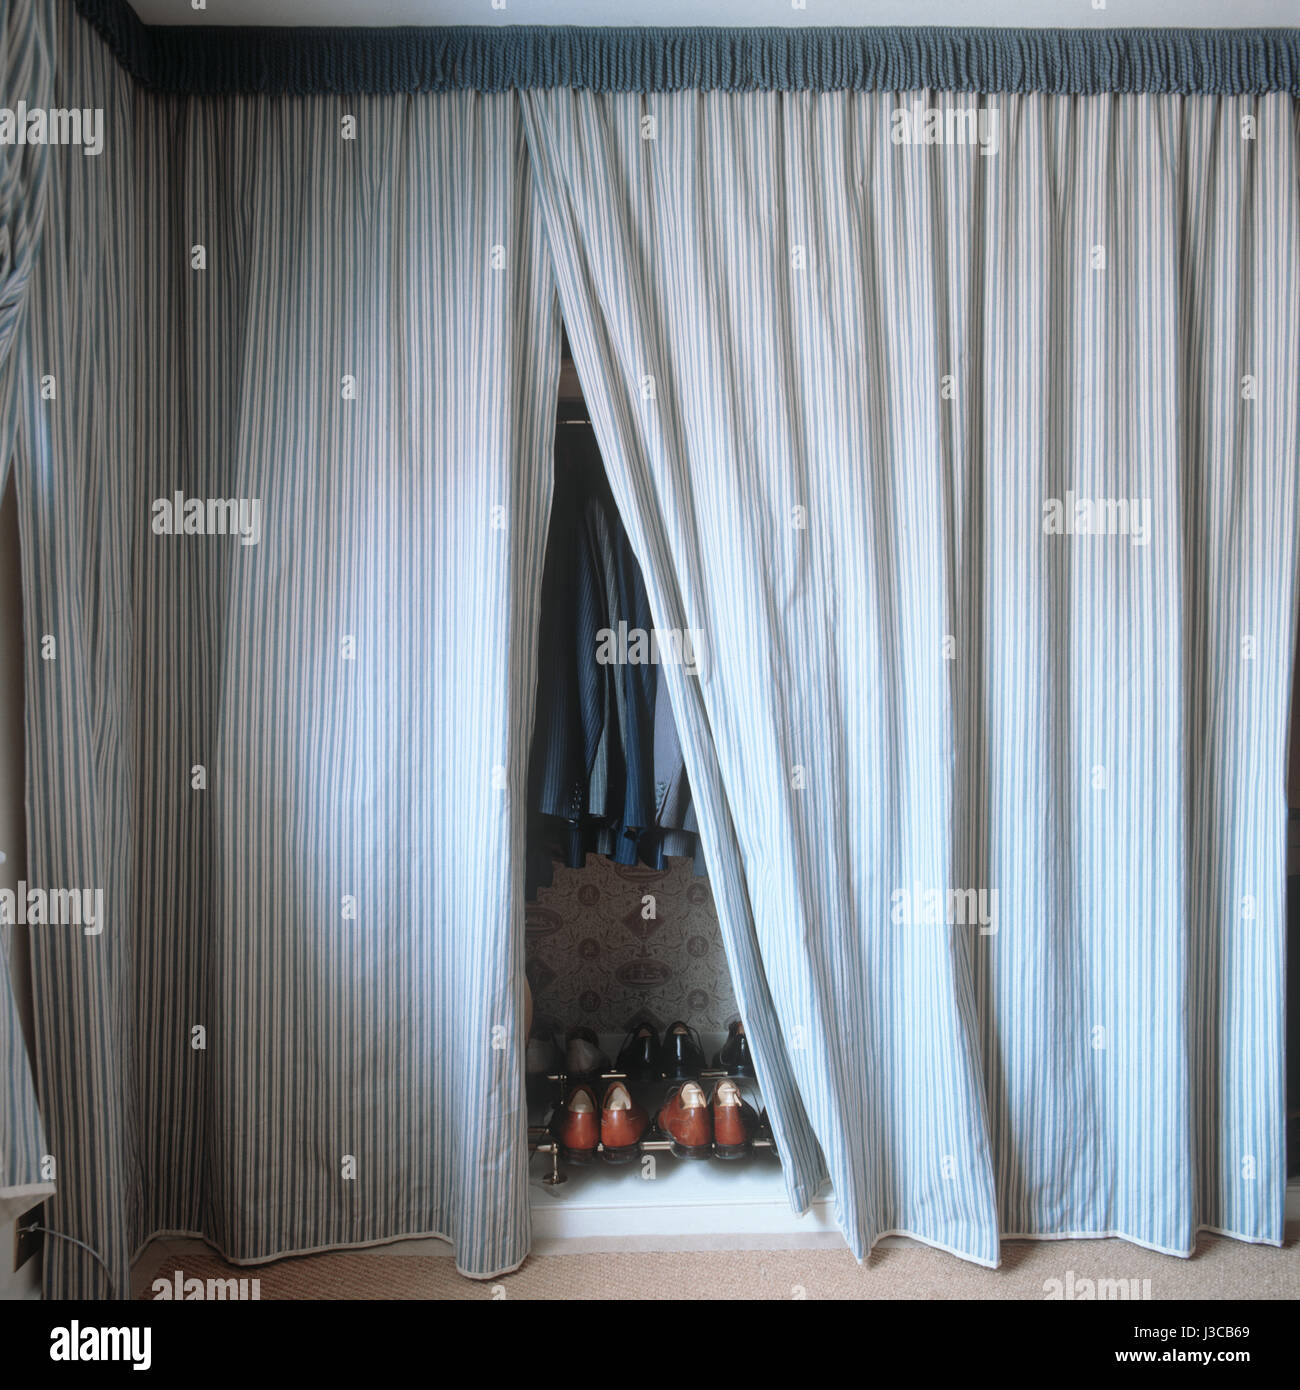 Un armario con cortinas a rayas. Foto de stock